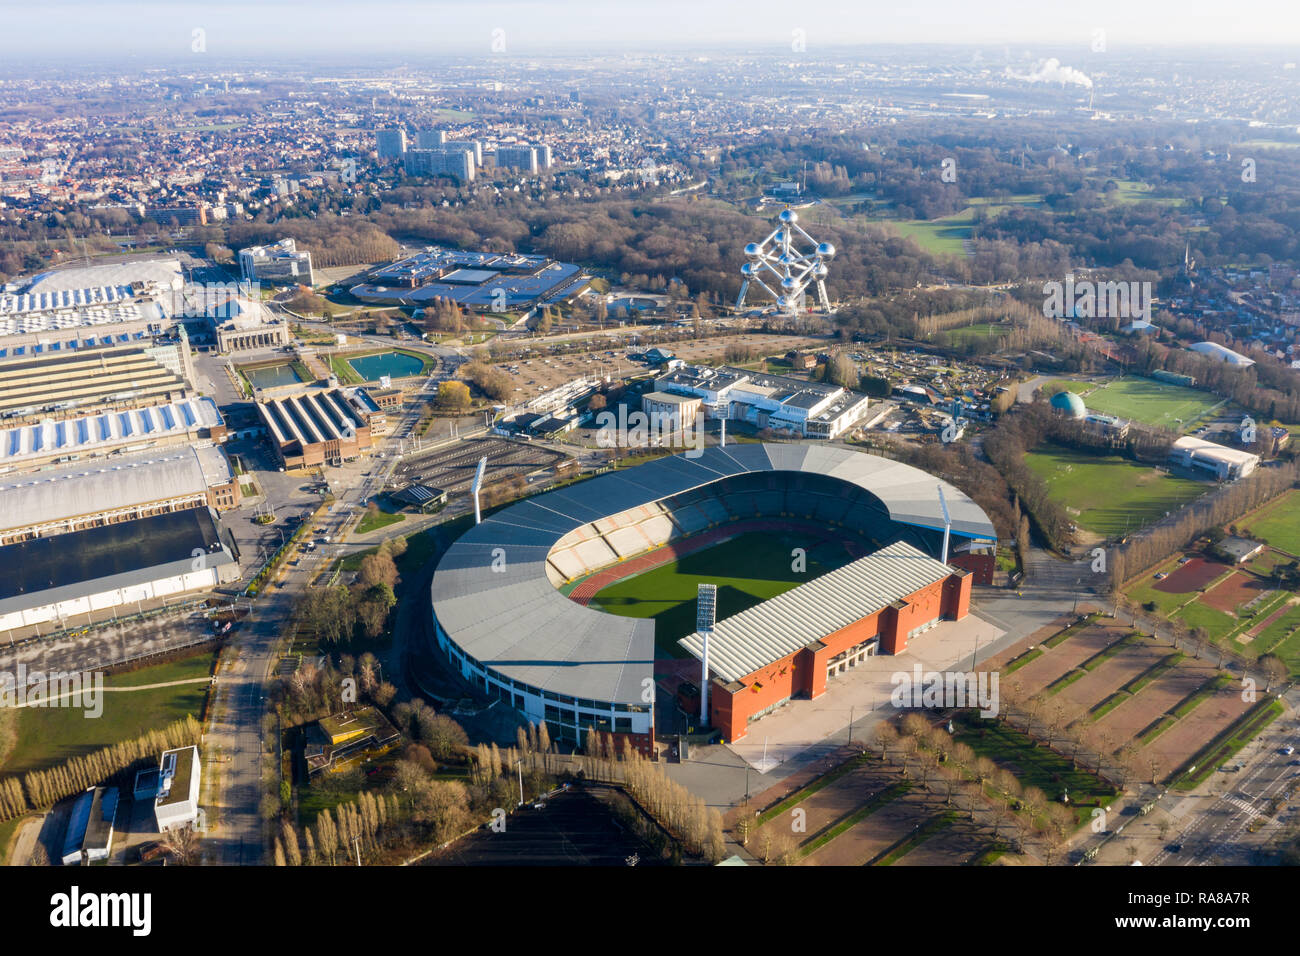 Le Roi Baudouin de Football et Rugby Stadium vue aérienne feat. L'Atomium bâtiment emblématique dans le centre-ville de Bruxelles, Belgique Banque D'Images